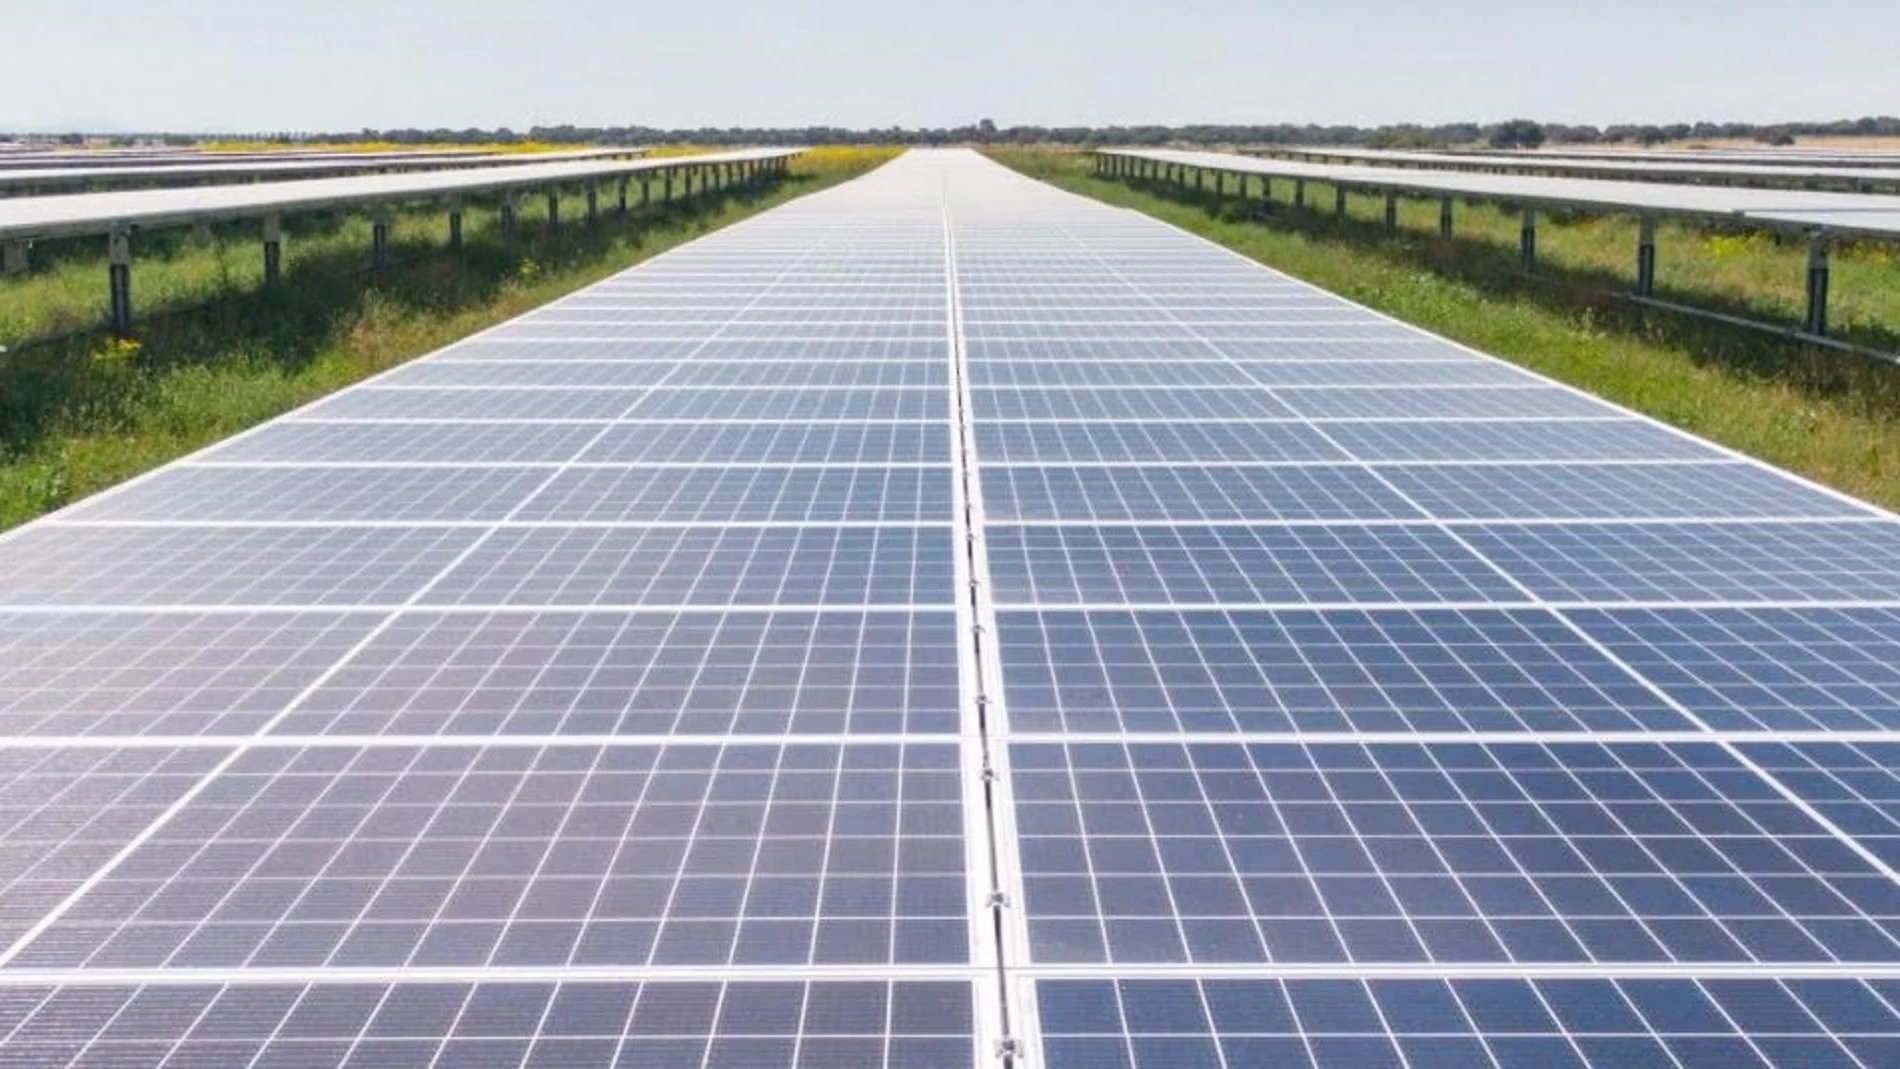 Las placas fotovoltaicas pueden pasar en un futuro al suelo